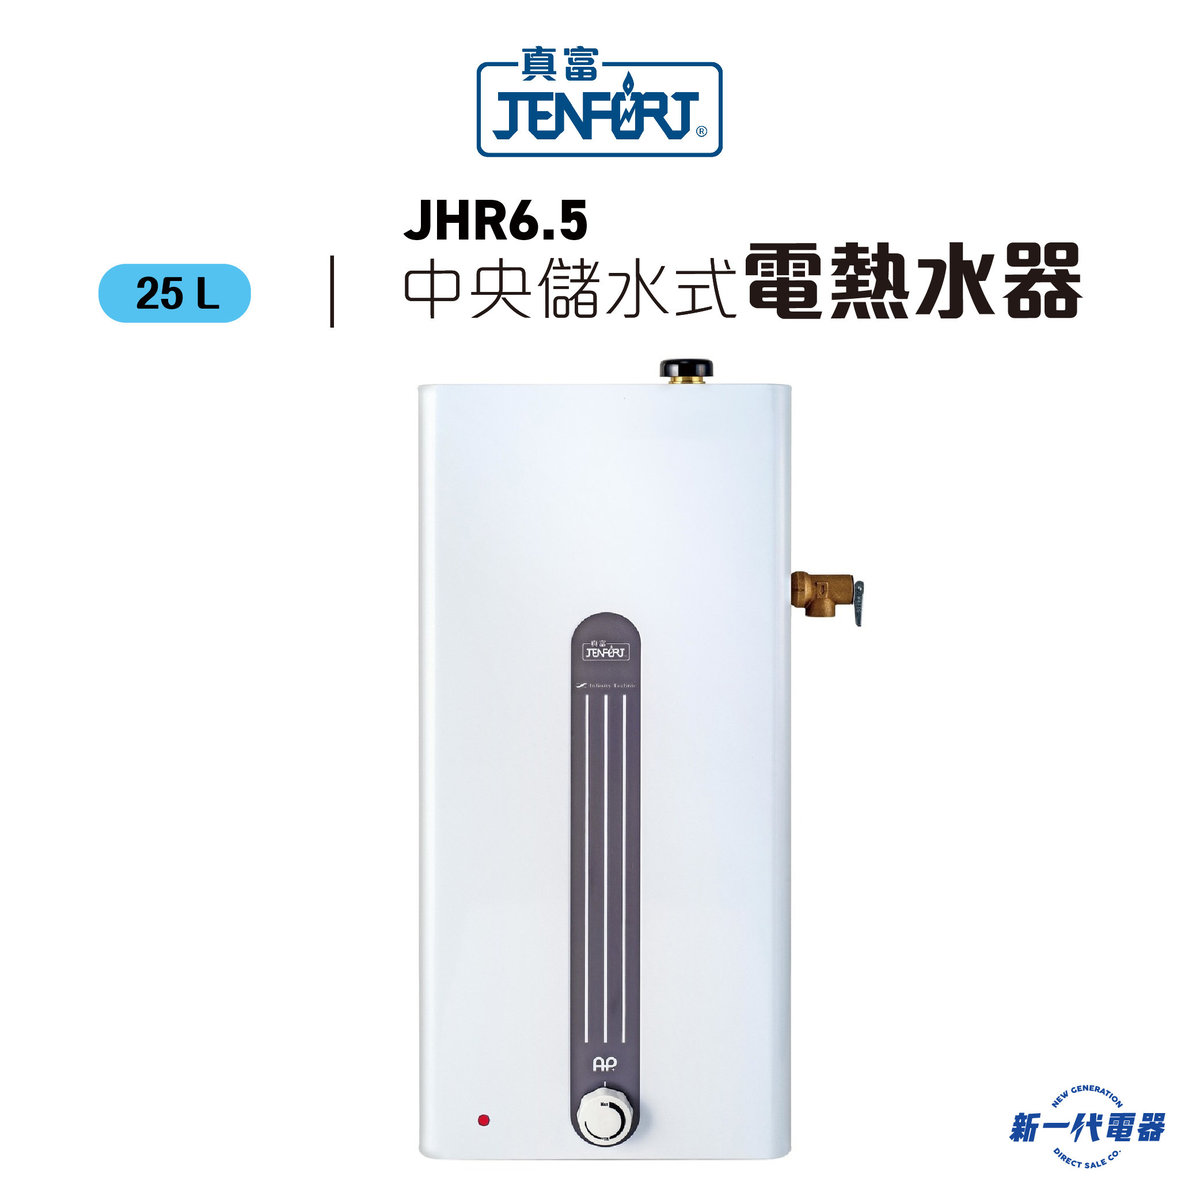 JHR6.5  -24.8公升 中央儲水式電熱水爐 (JHR-6.5)